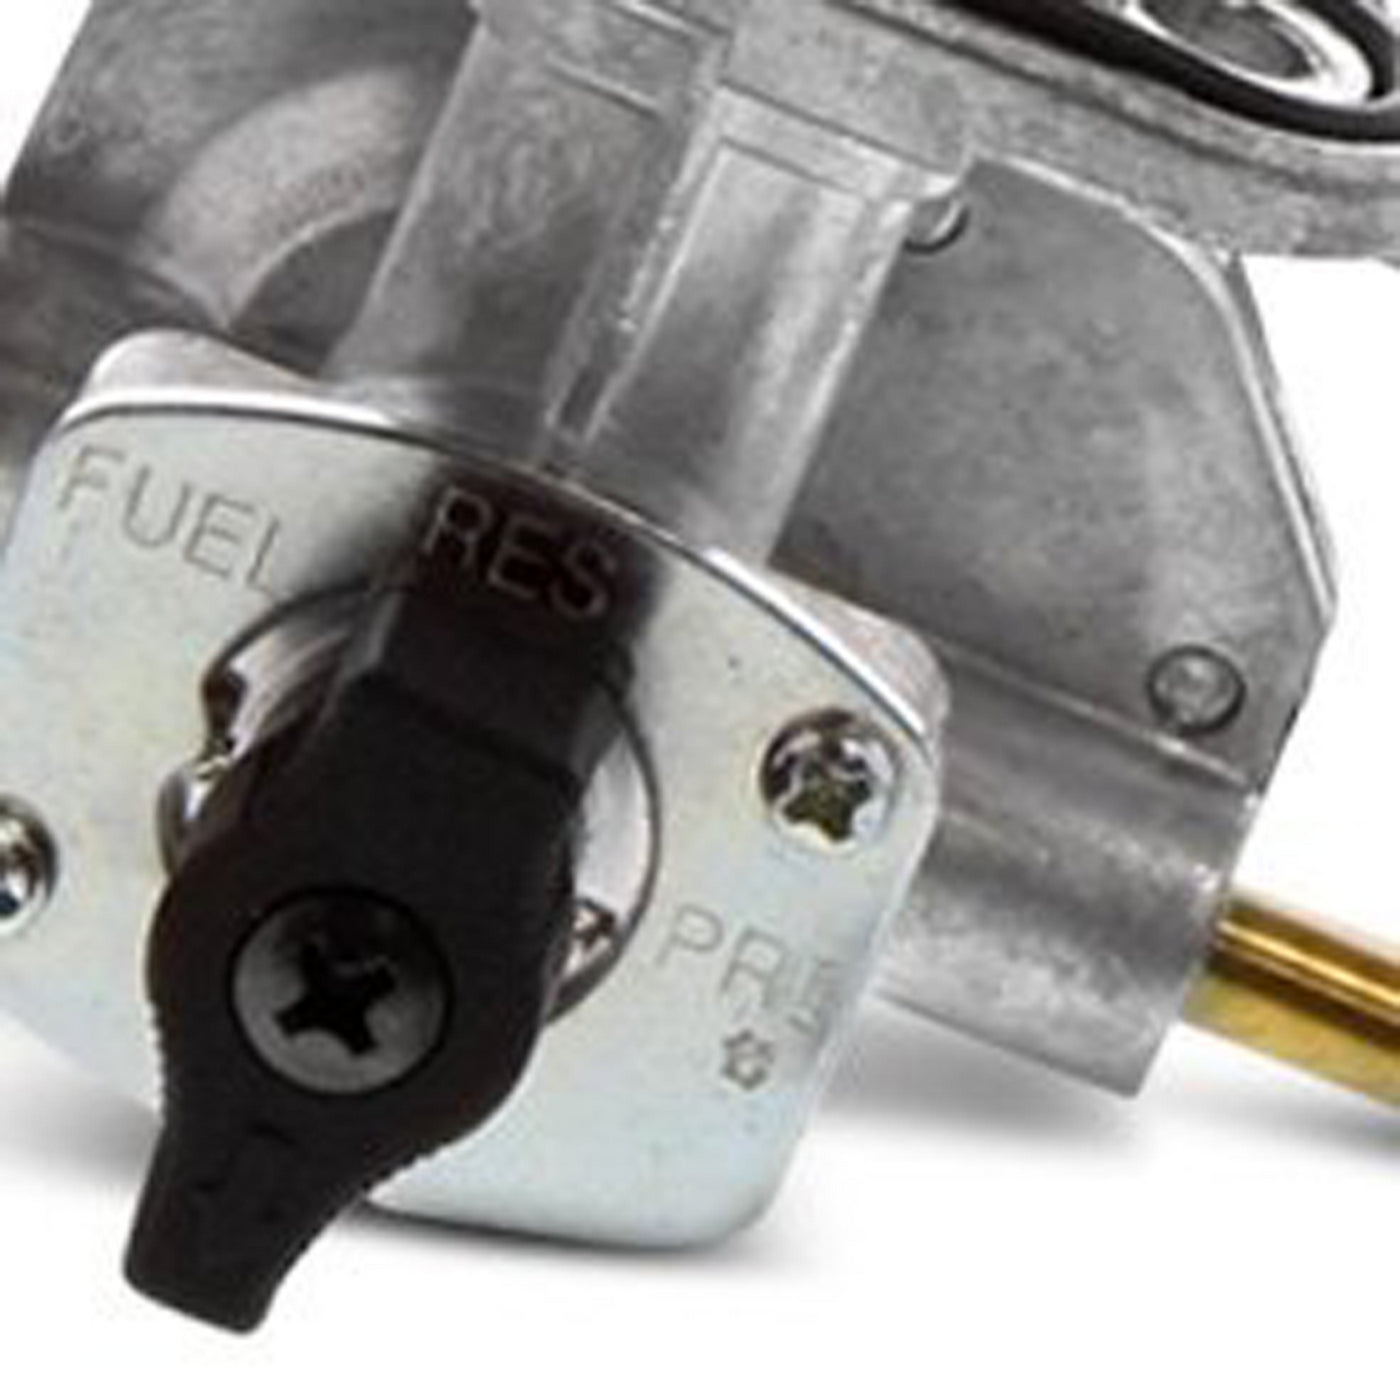 Fuel Star FS101-0134 Fuel Valve Kit #FS101-0134